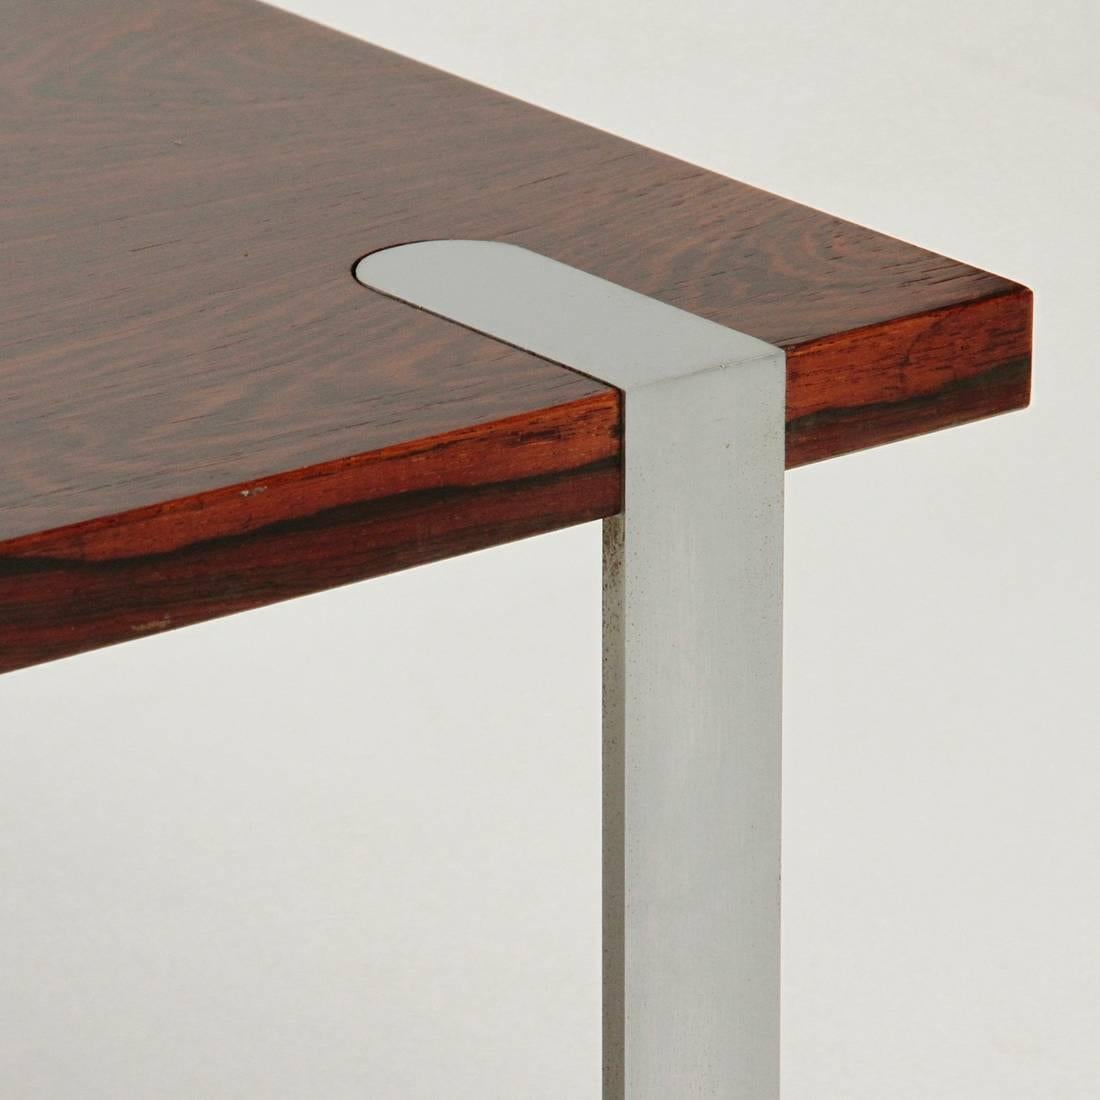 Italian Square Coffee Table with Aluminium Legs 1